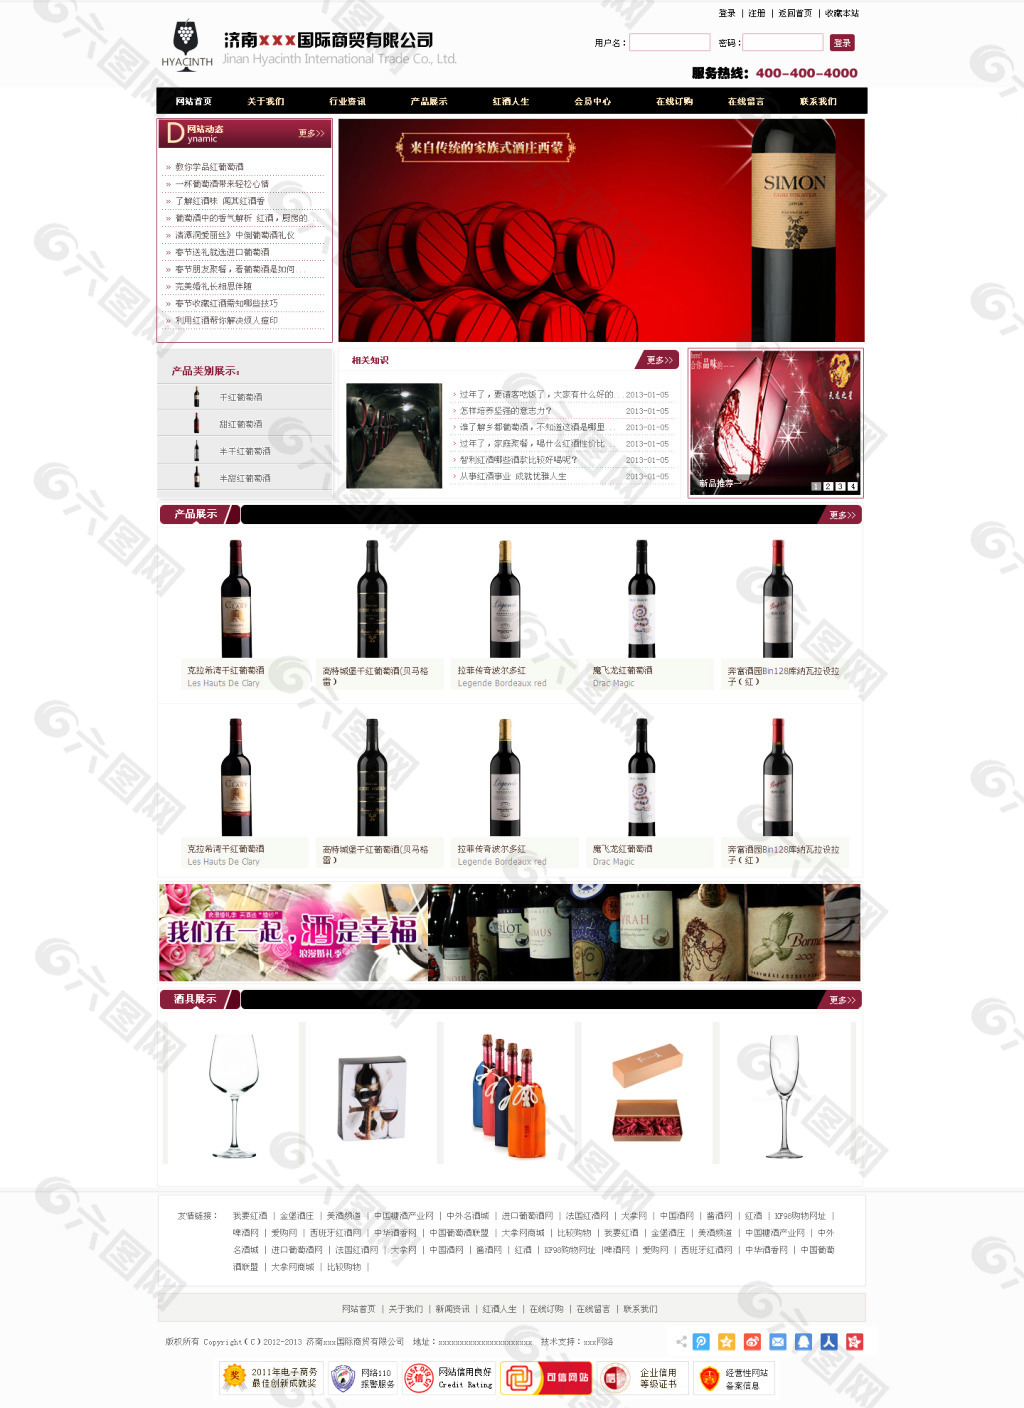 红酒网站PSD